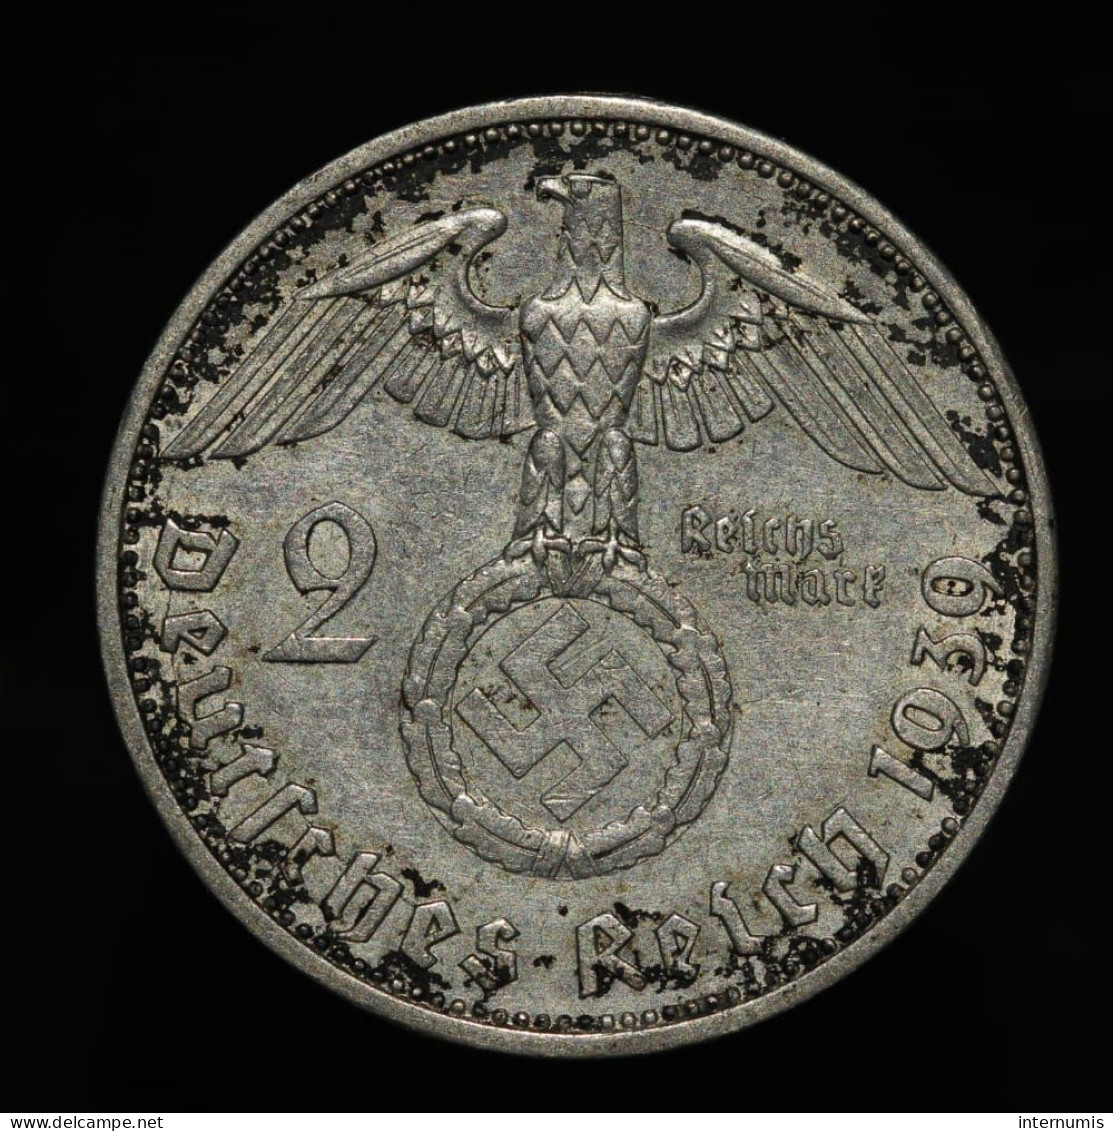 Allemagne / Germany, Von Hindenburg, 2 Mark, 1939, A - Berln, Argent (Silver), TTB+ (EF), KM#93 - 2 Reichsmark